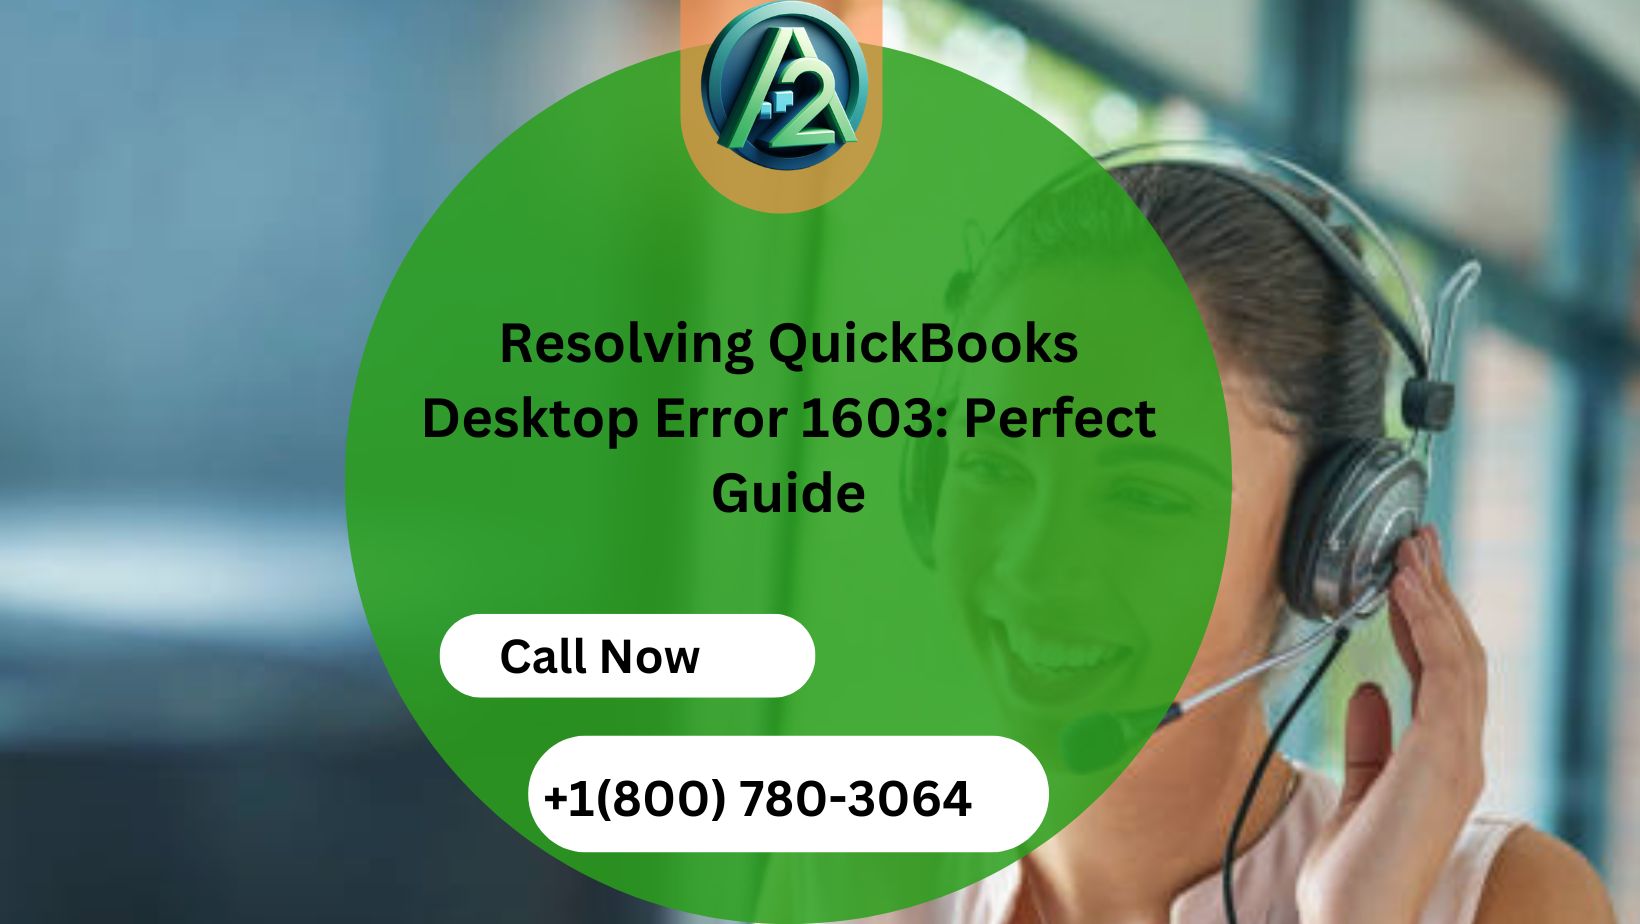 Resolving QuickBooks Desktop Error 1603: Perfect Guide